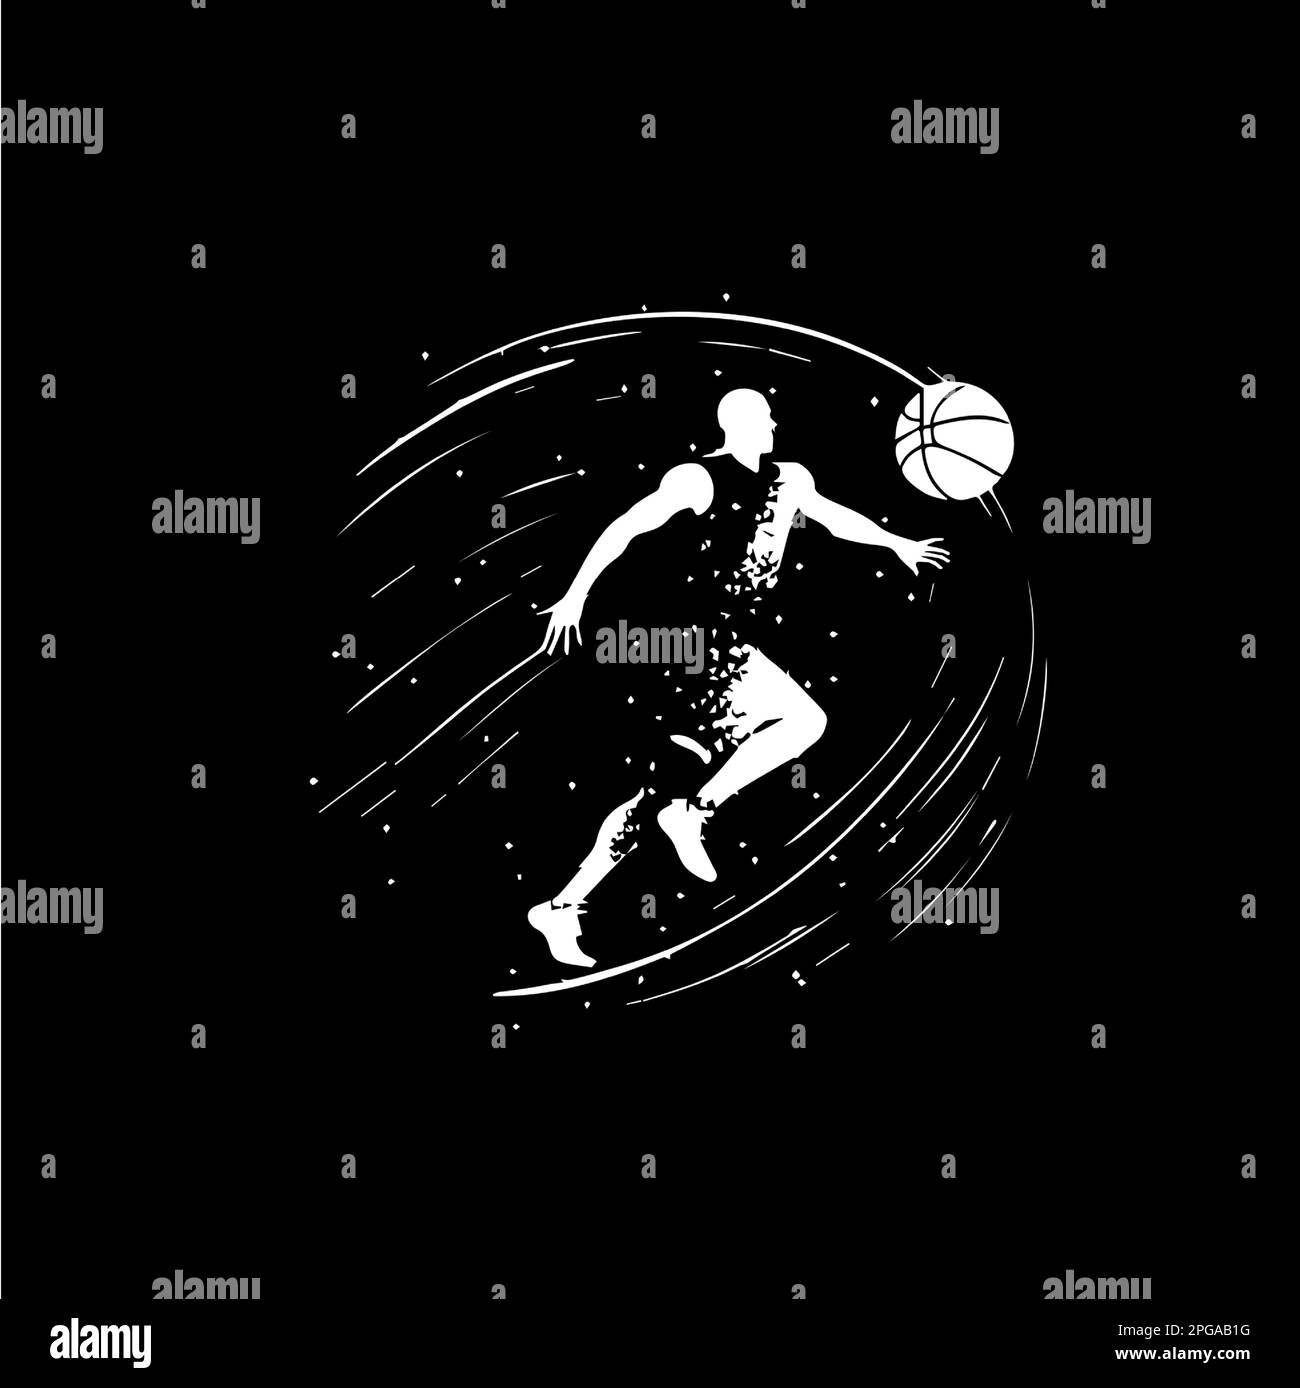 Weißes Emblem des Basketballspielers, Laufdribbeln mit Ball, Action-Spieler-Symbol, Logo-Vorlage, Hand-Malen-Tattoo-Silhouette auf Schwarz Stock Vektor